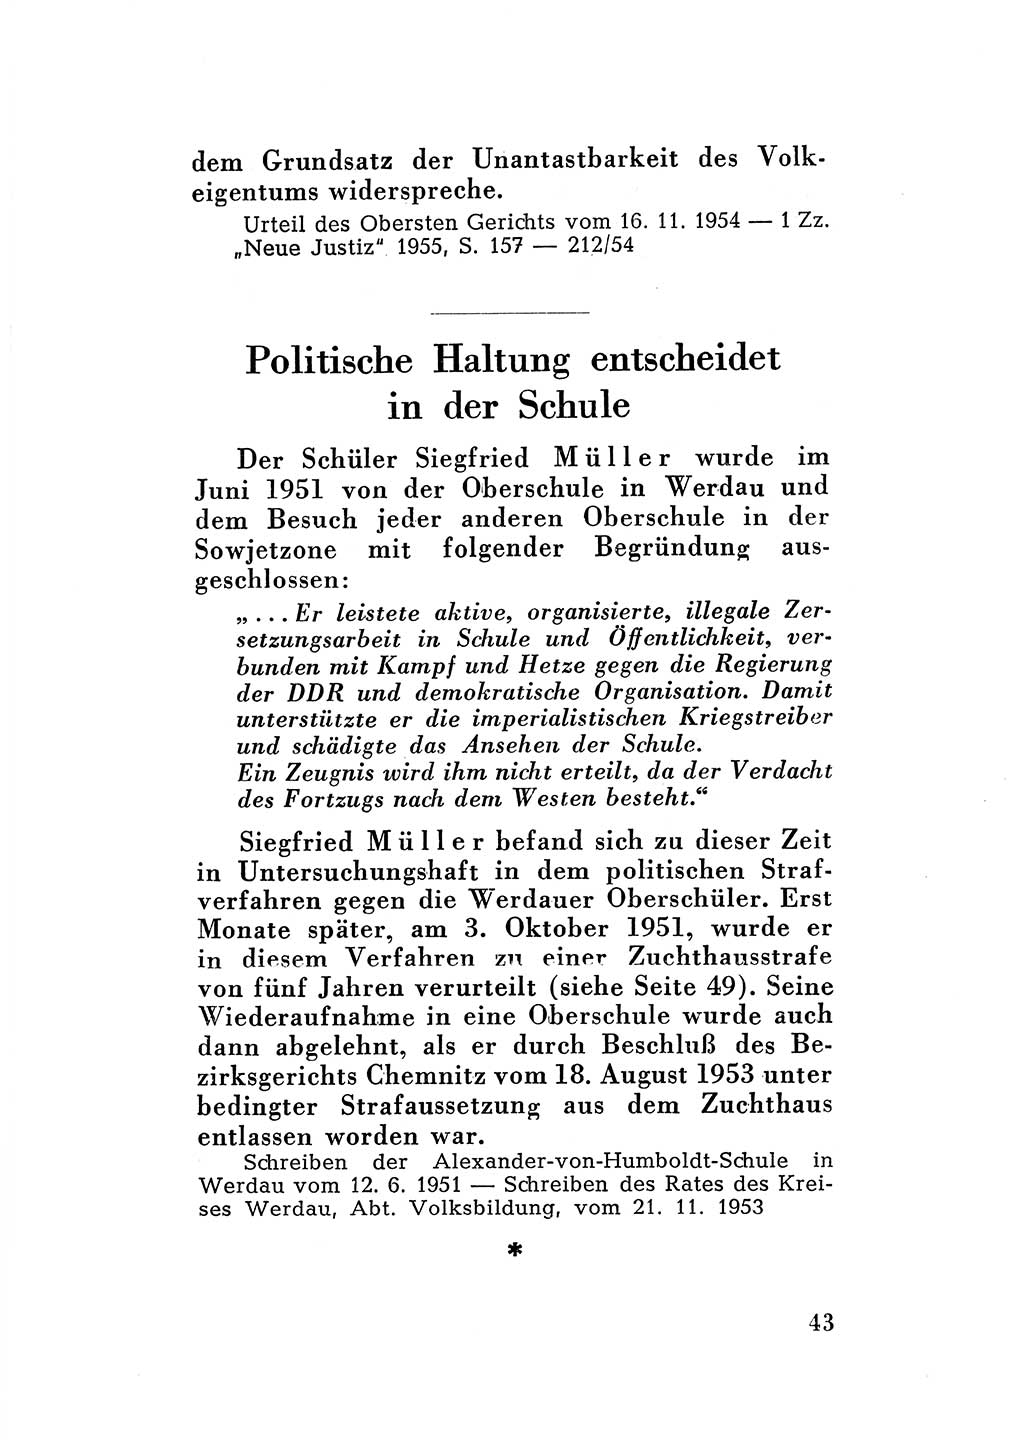 Katalog des Unrechts, Untersuchungsausschuß Freiheitlicher Juristen (UfJ) [Bundesrepublik Deutschland (BRD)] 1956, Seite 43 (Kat. UnR. UfJ BRD 1956, S. 43)